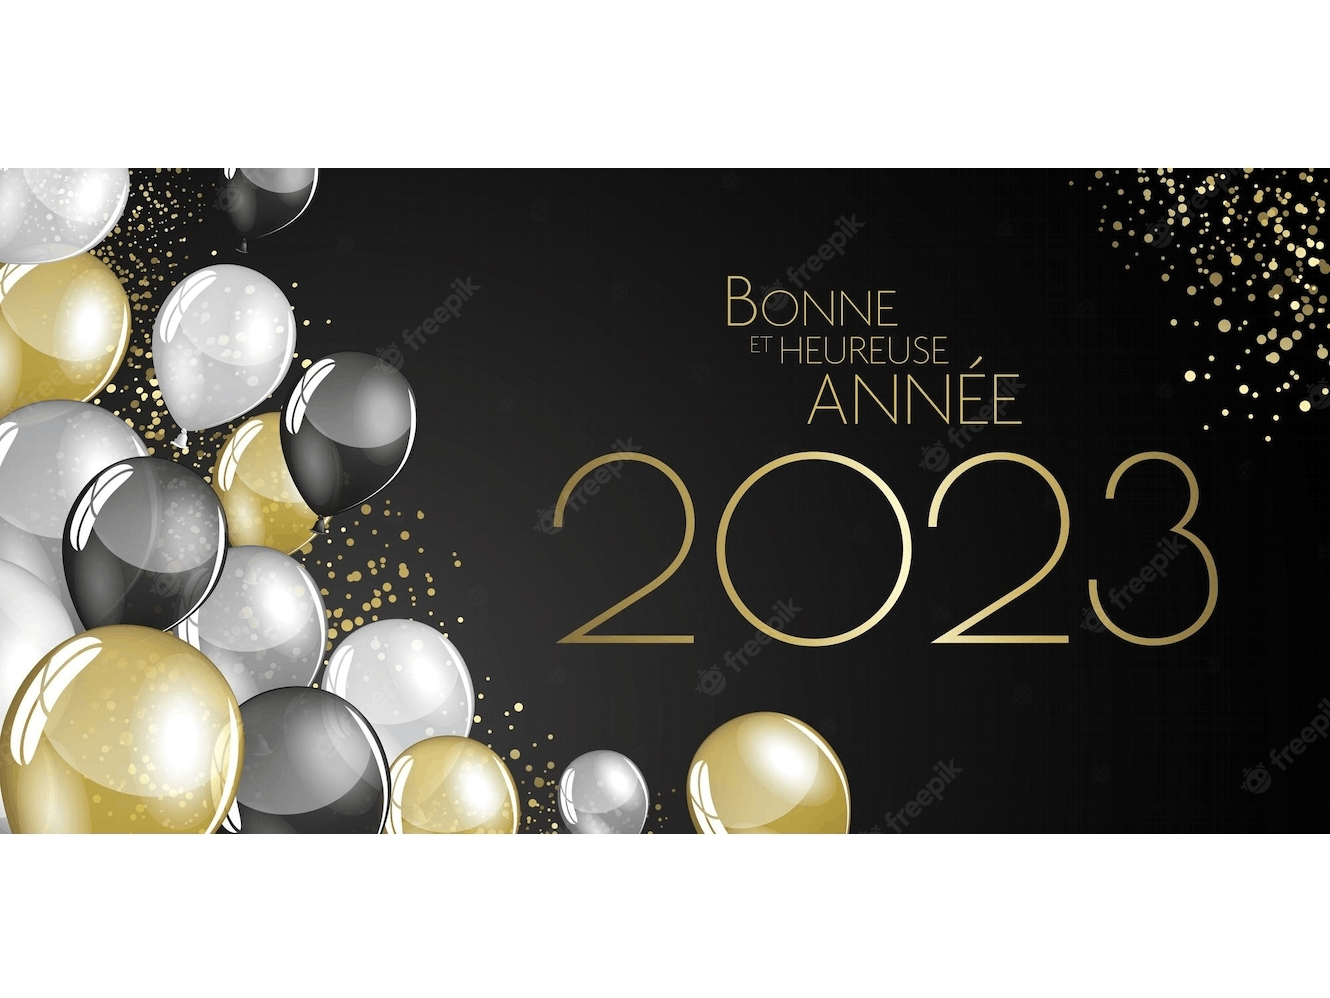 Belle et heureuse année 2023